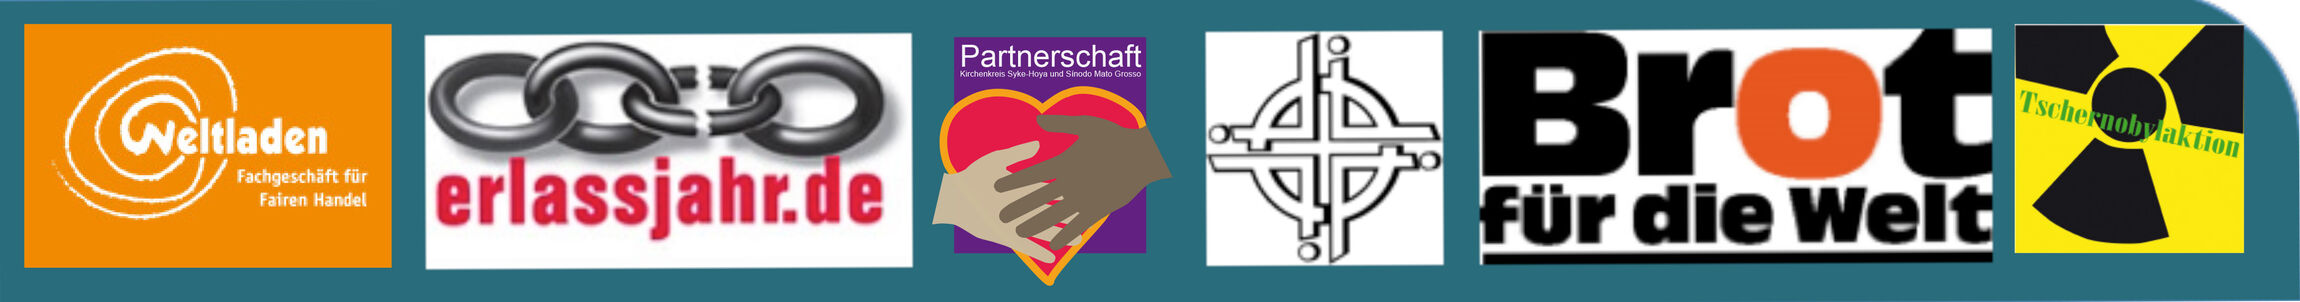 kirchenkreis-syke-hoya-partnerschaftsausschuss-logo